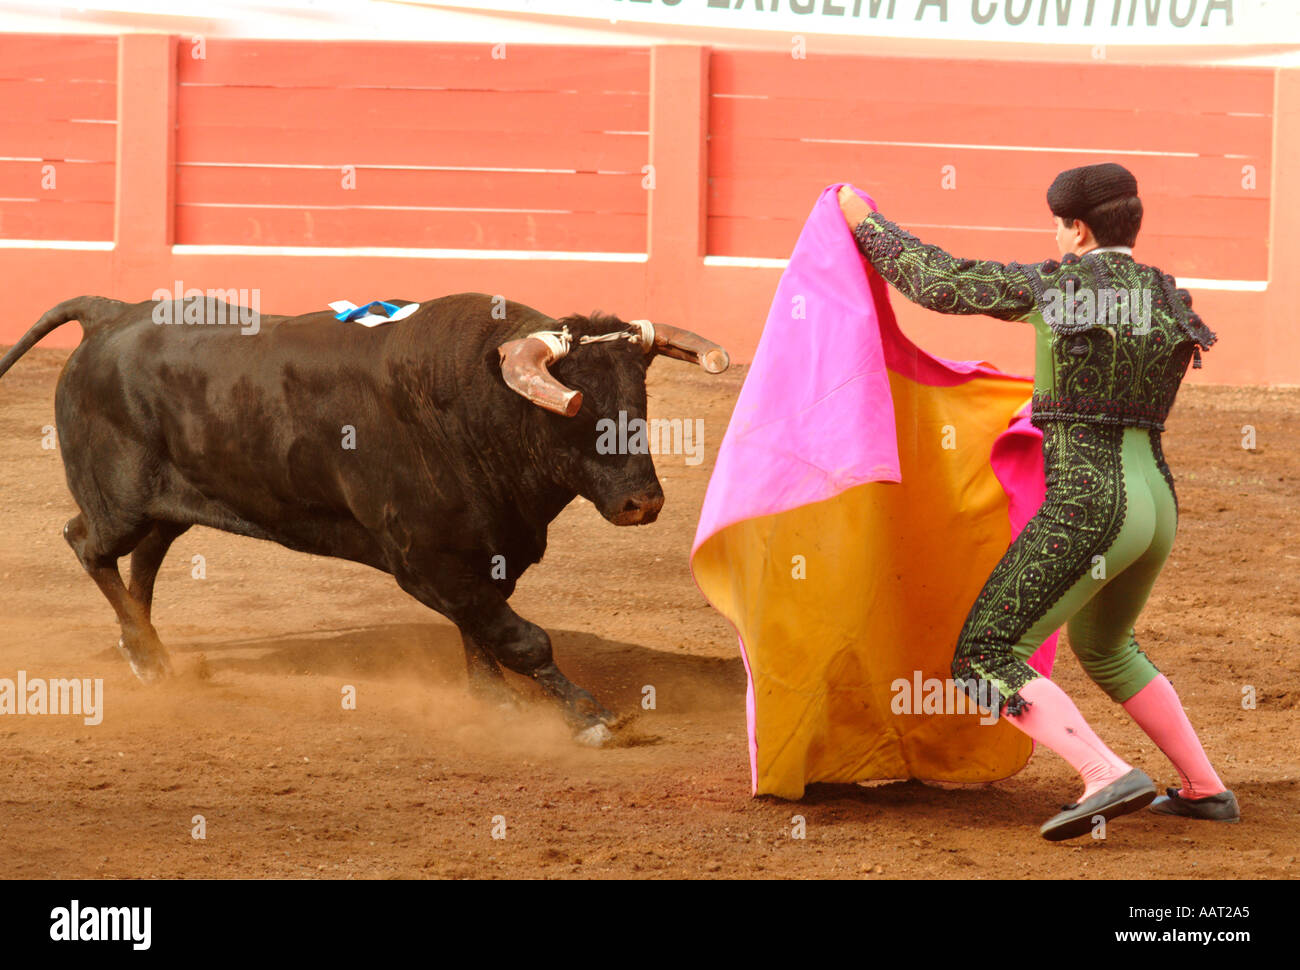 Un matador alienta un toro para cargar con su colorida Cape en una corrida de toros en la Graciosa, Azores, Portugal. Foto de stock